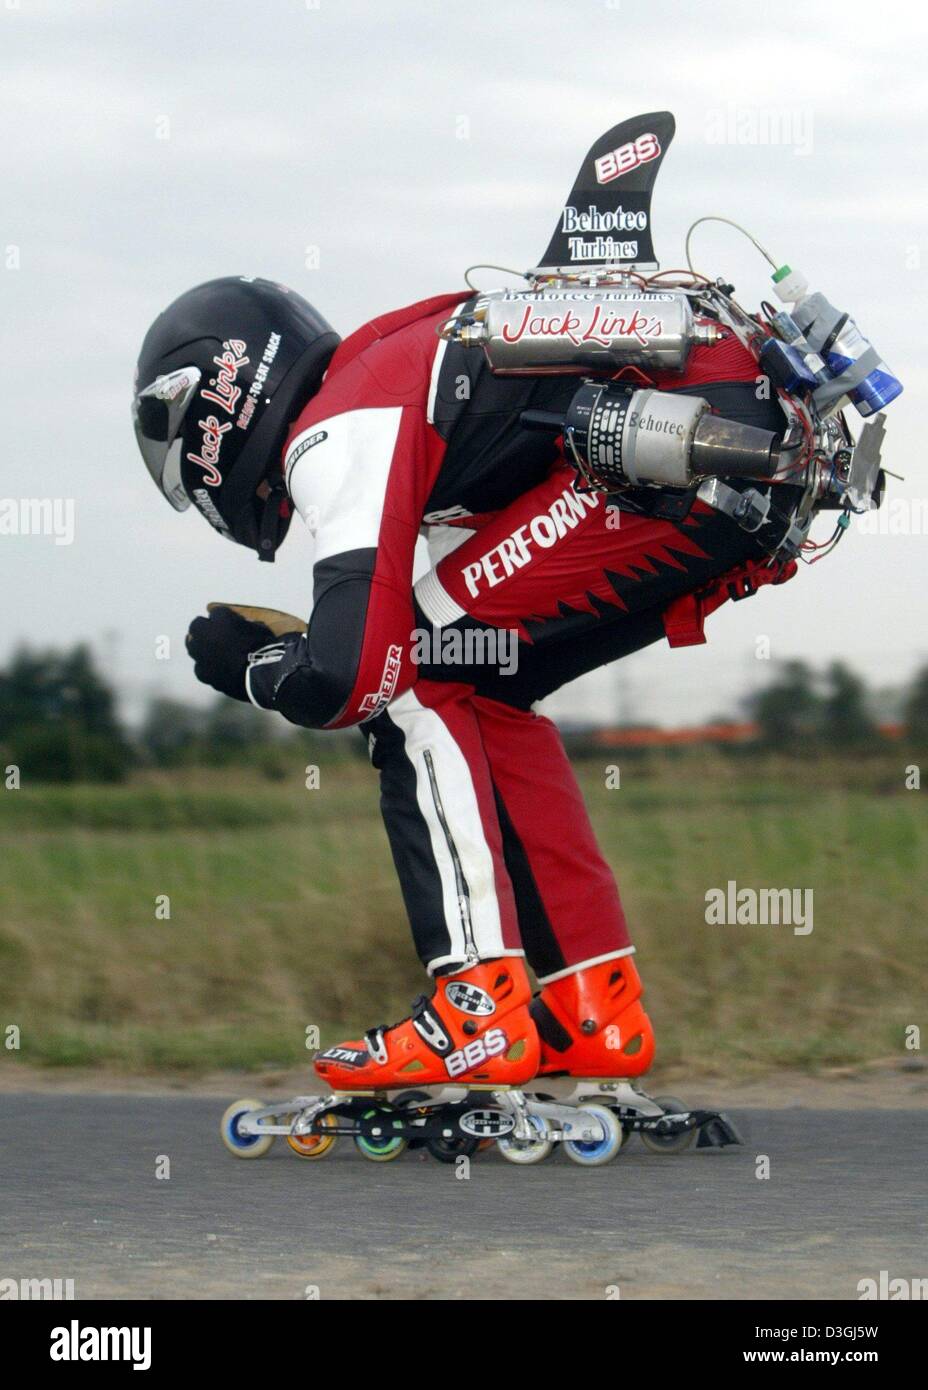 Afp) - L'Allemand Dirk Auer patineur extrême atteint une vitesse  inimaginable avec son jet powered du roller sur une rue fermée, en chiffres  bruts, l'Allemagne, Gerau 10 août 2004. En raison de